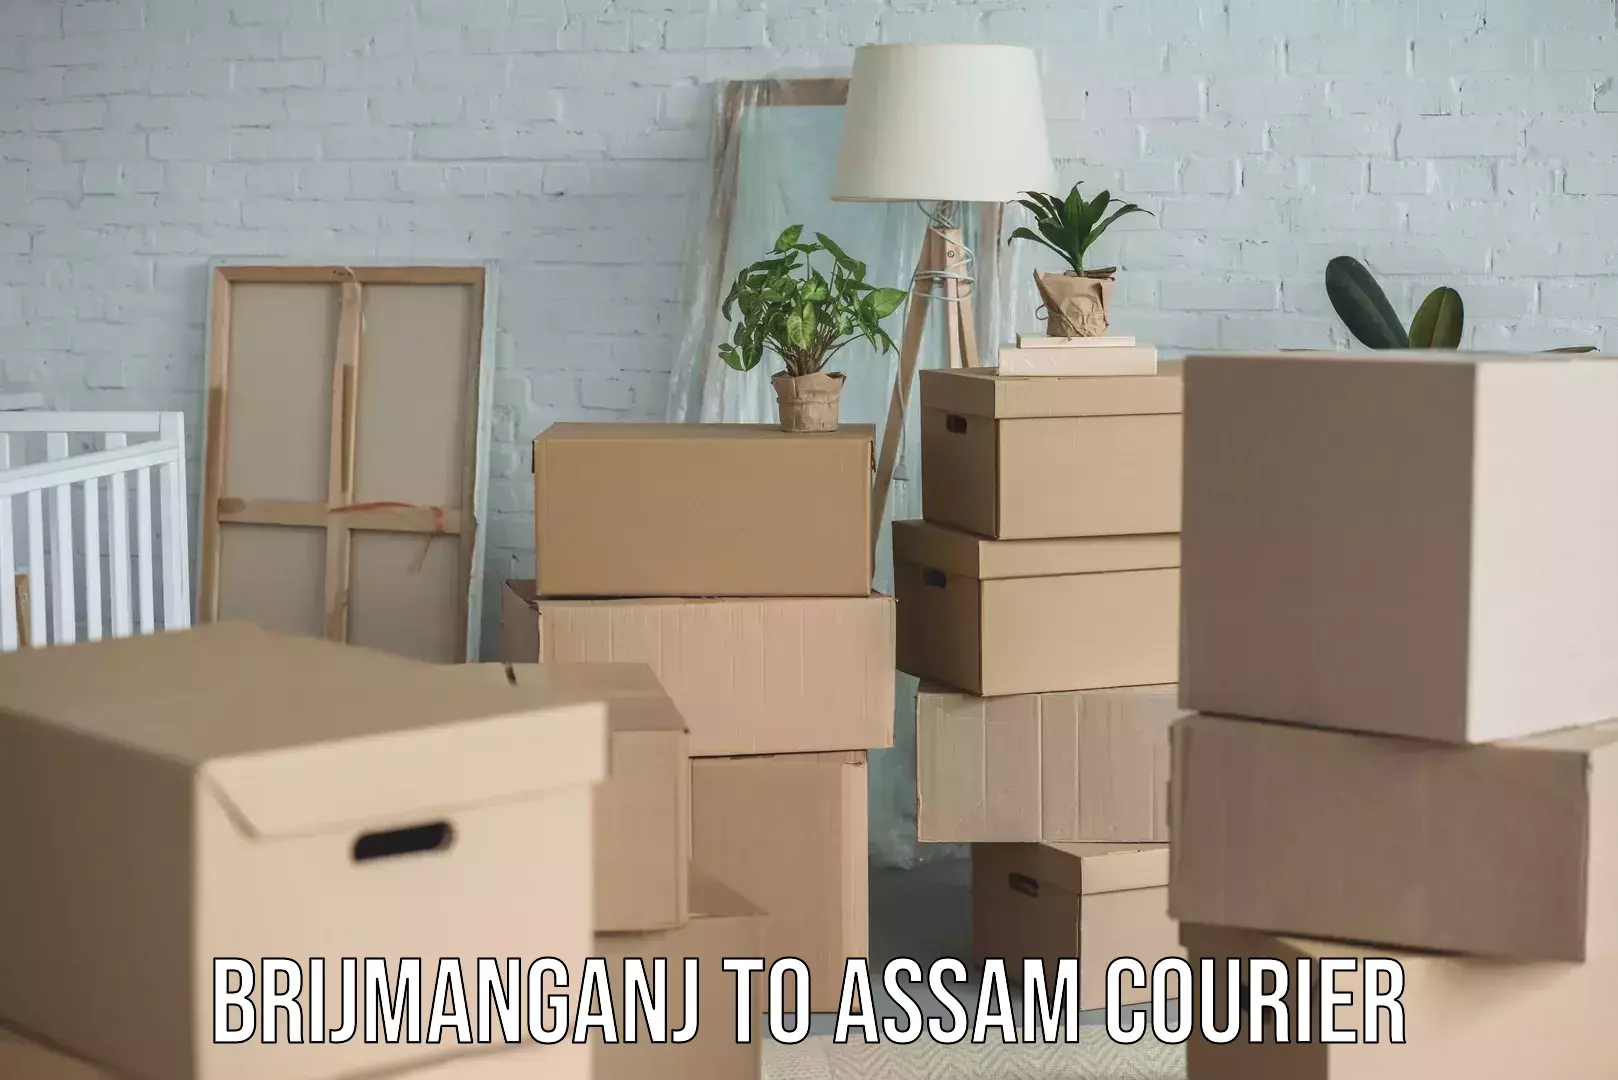 24-hour courier services Brijmanganj to Assam